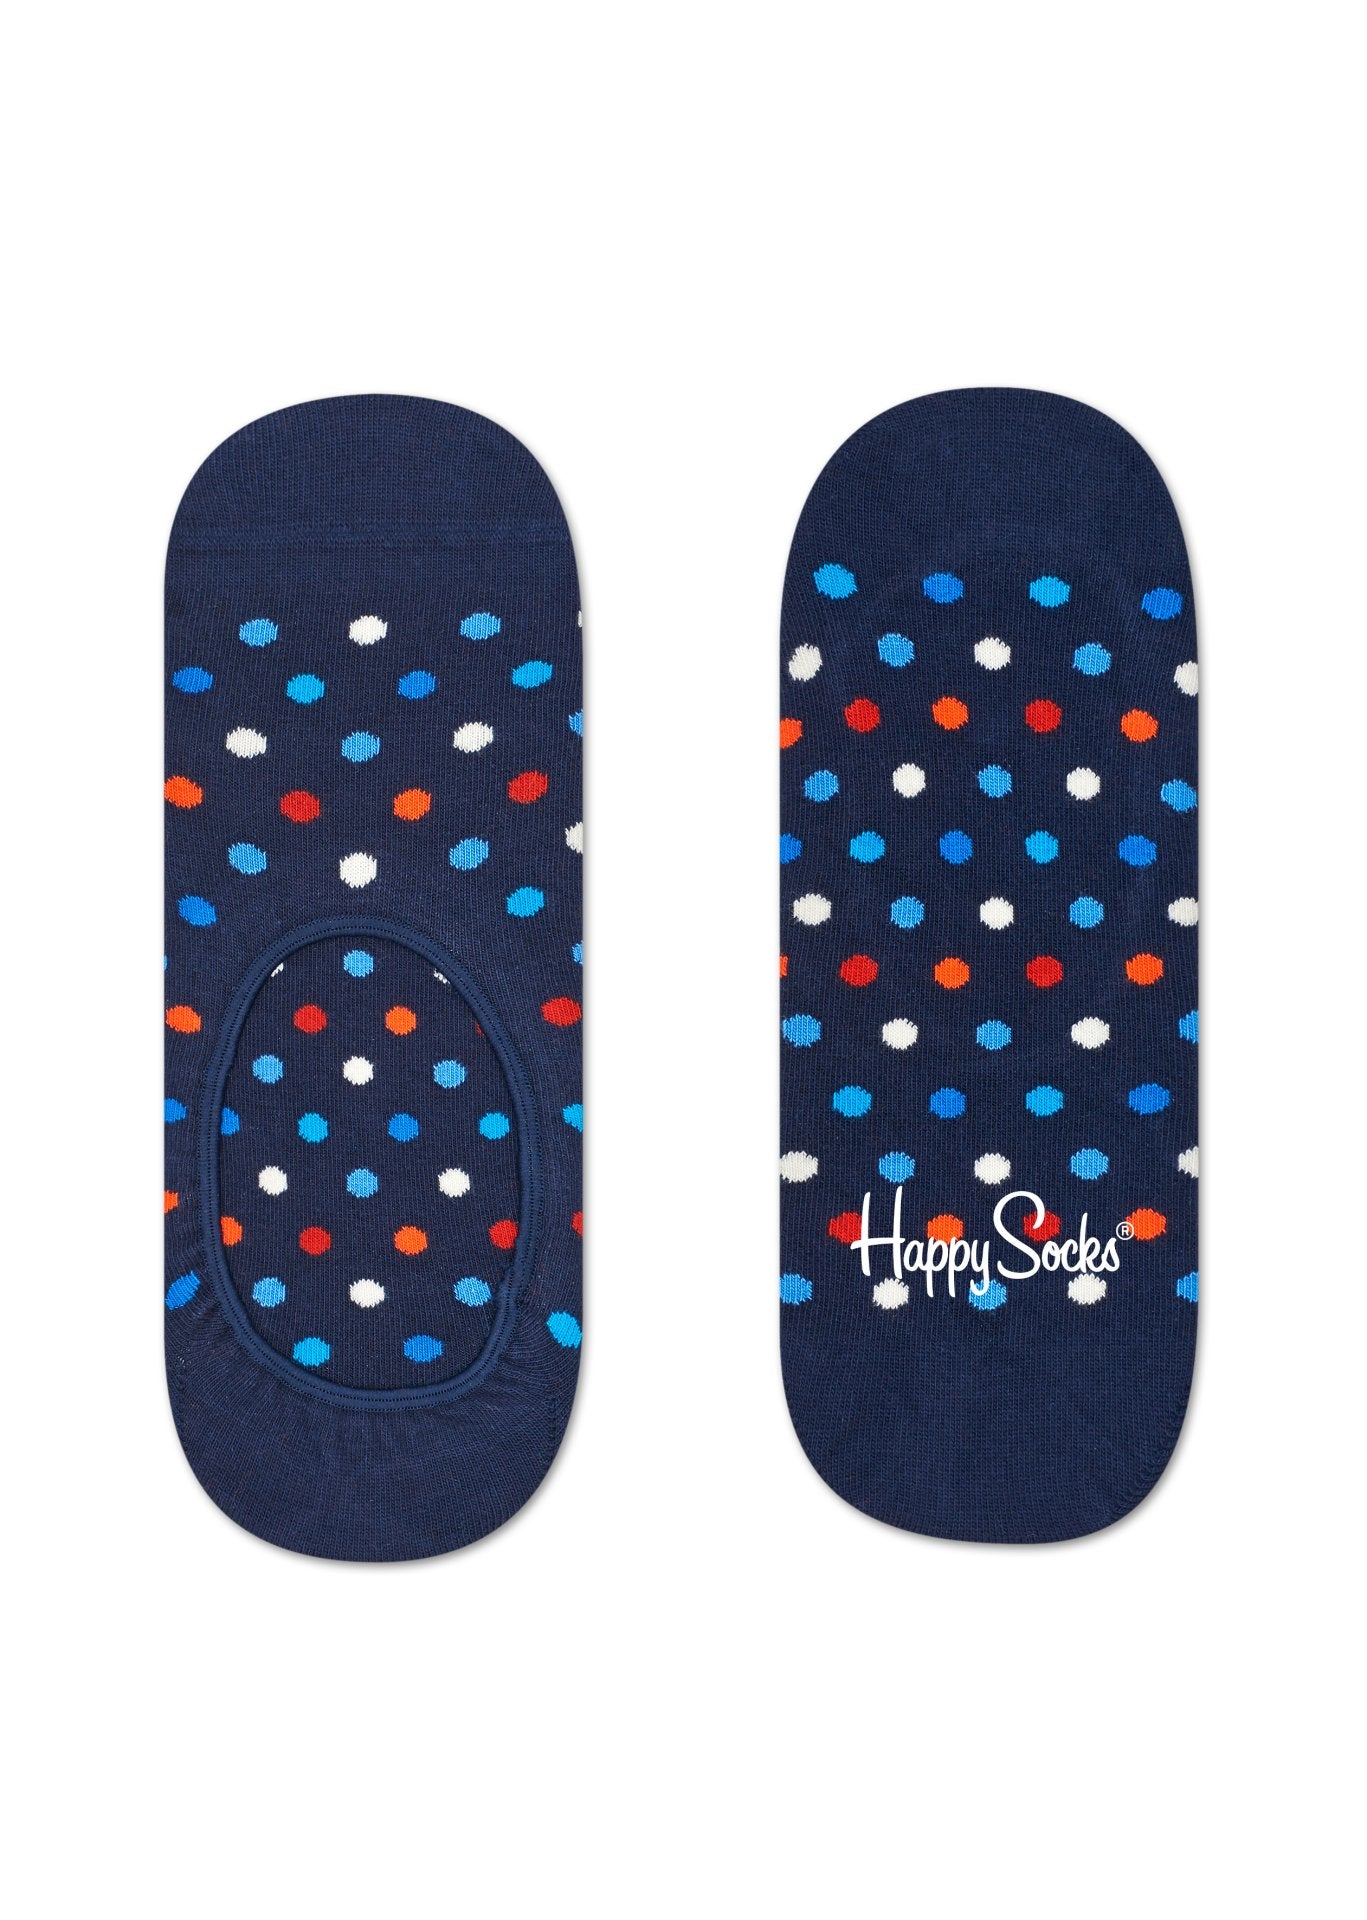 Modré nízké ponožky Happy Socks s barevnými tečkami, vzor Dot